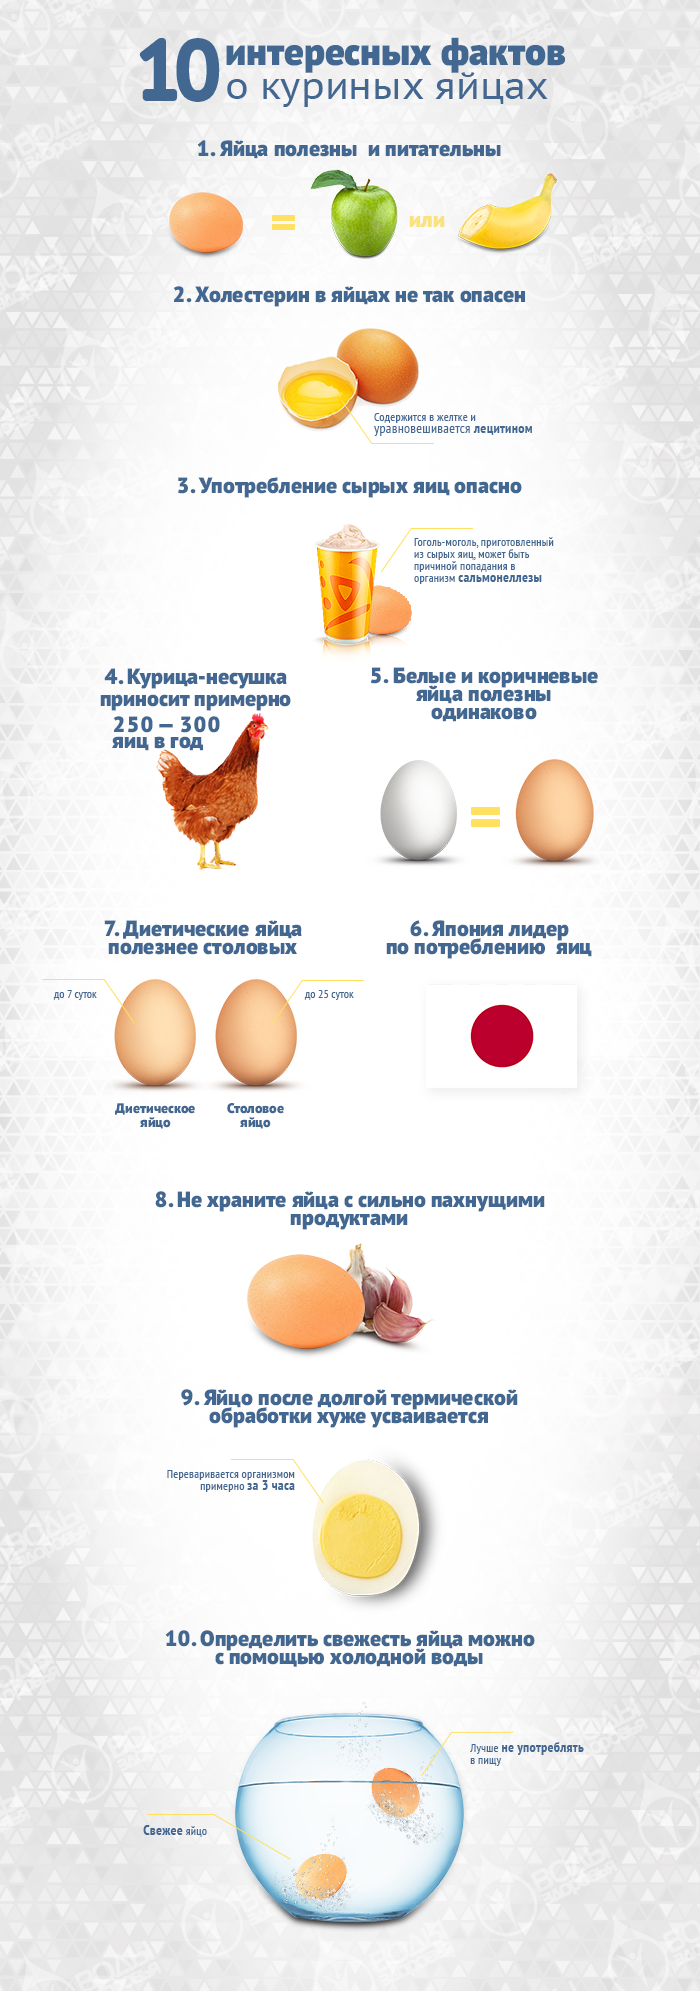 10 интересных фактов о куриных яйцах